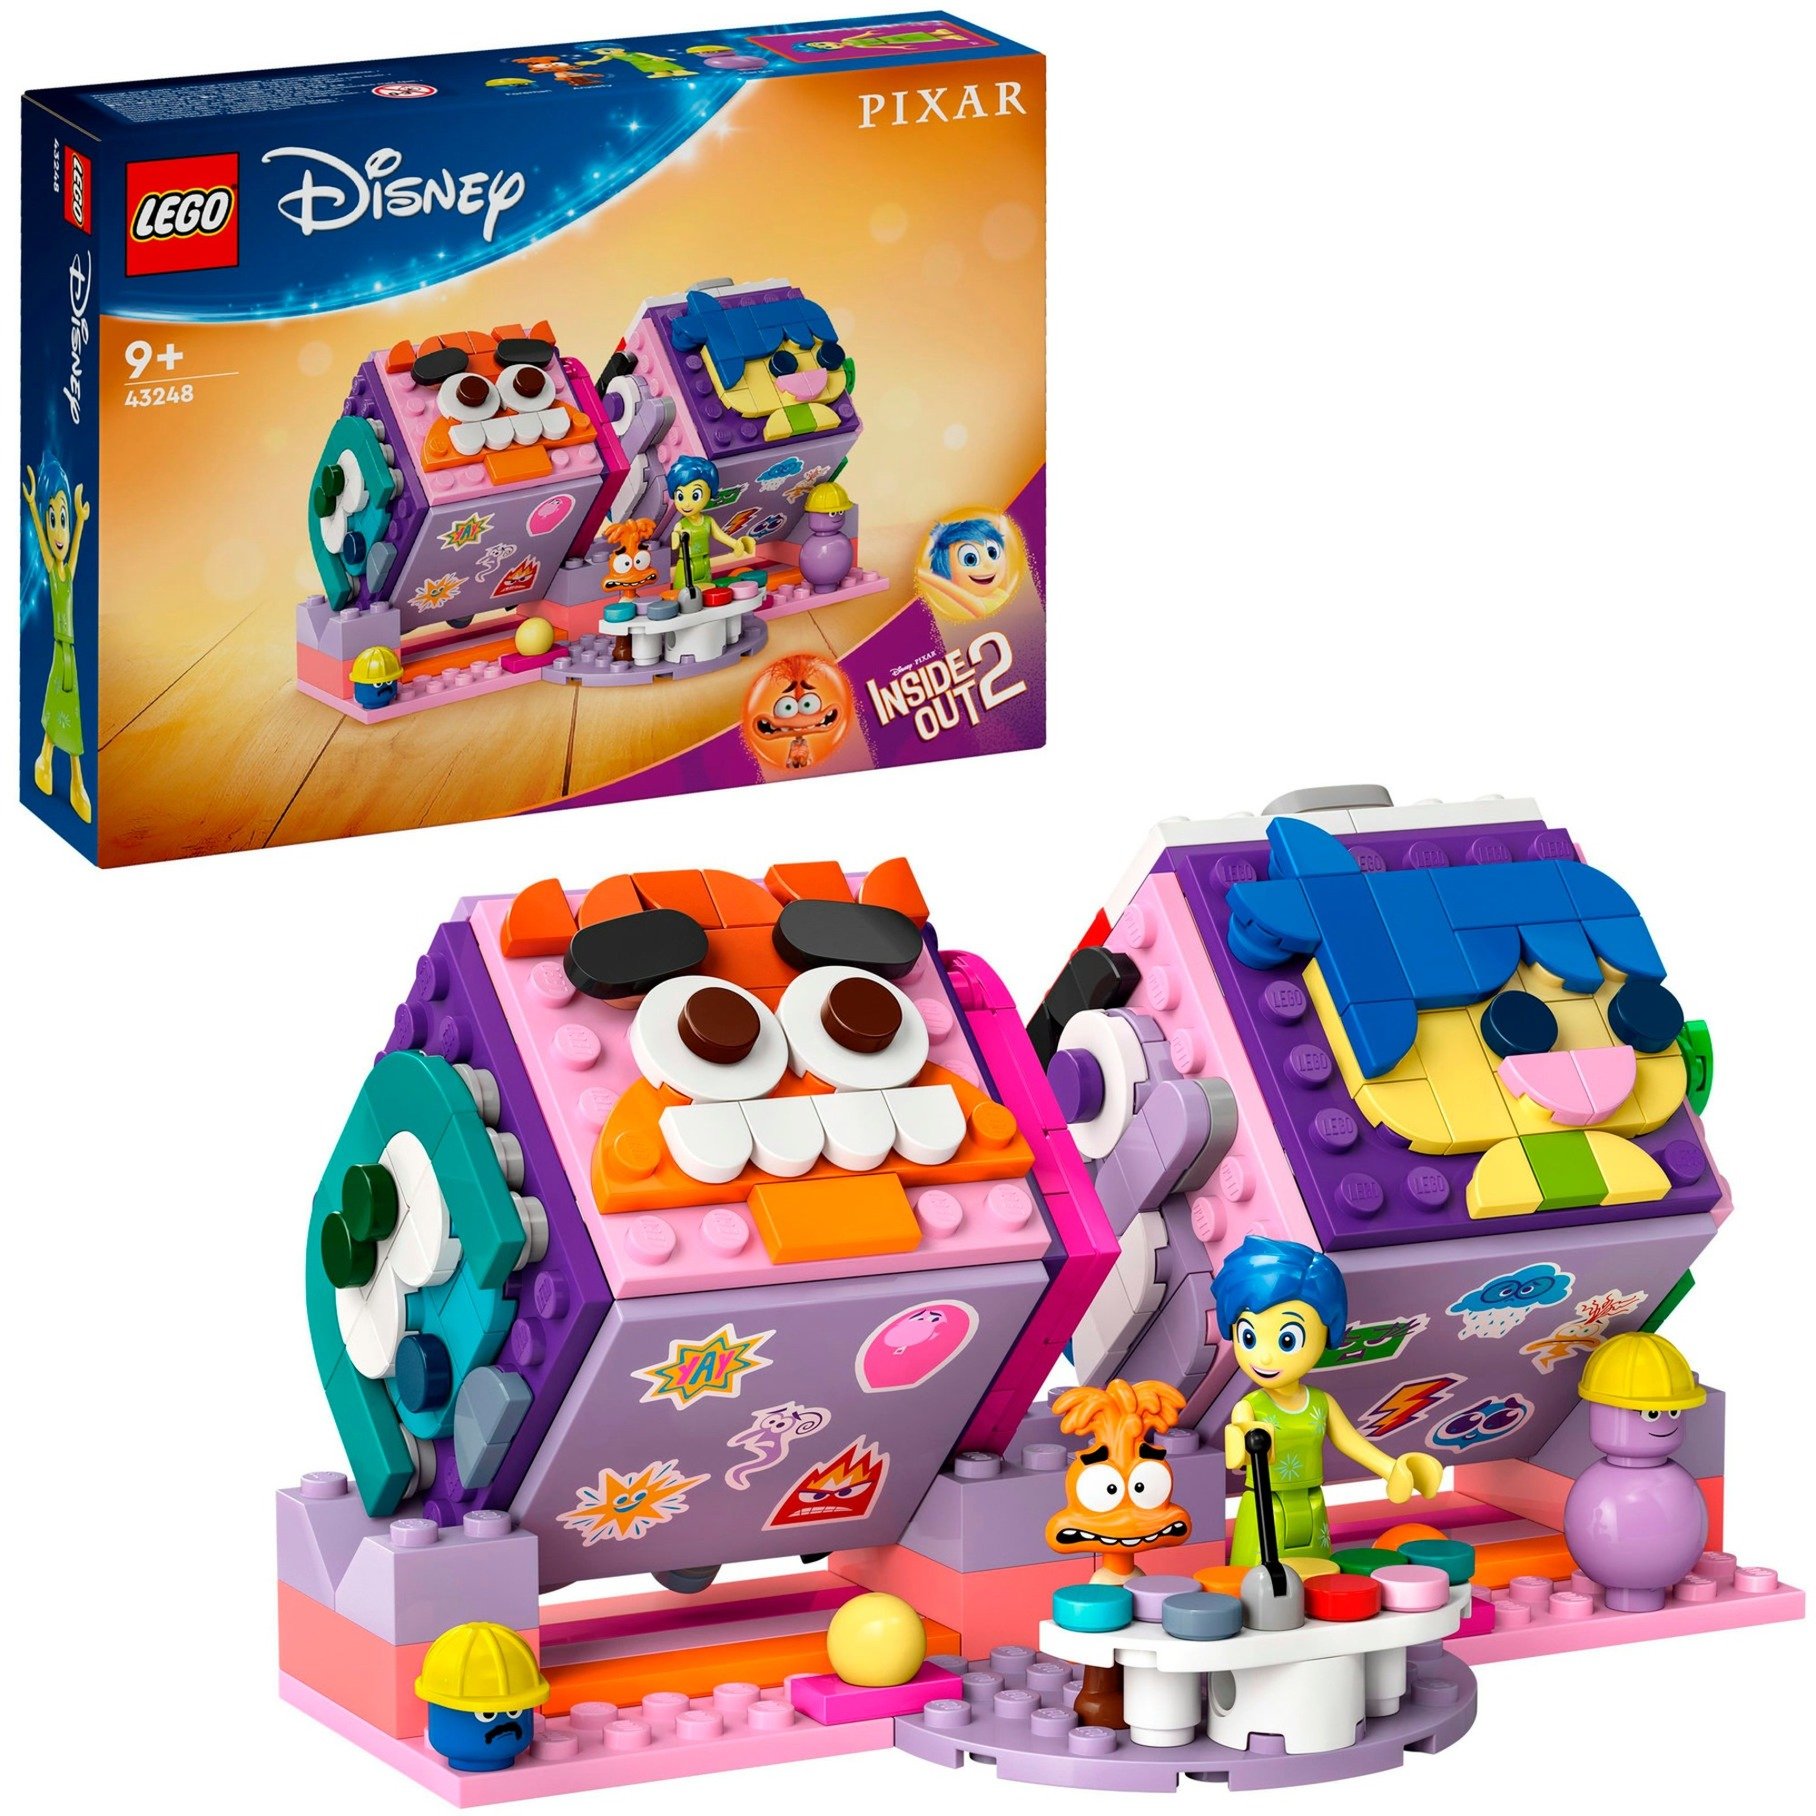 43248 Disney Pixar Alles steht Kopf 2 Stimmungswürfel, Konstruktionsspielzeug von Lego